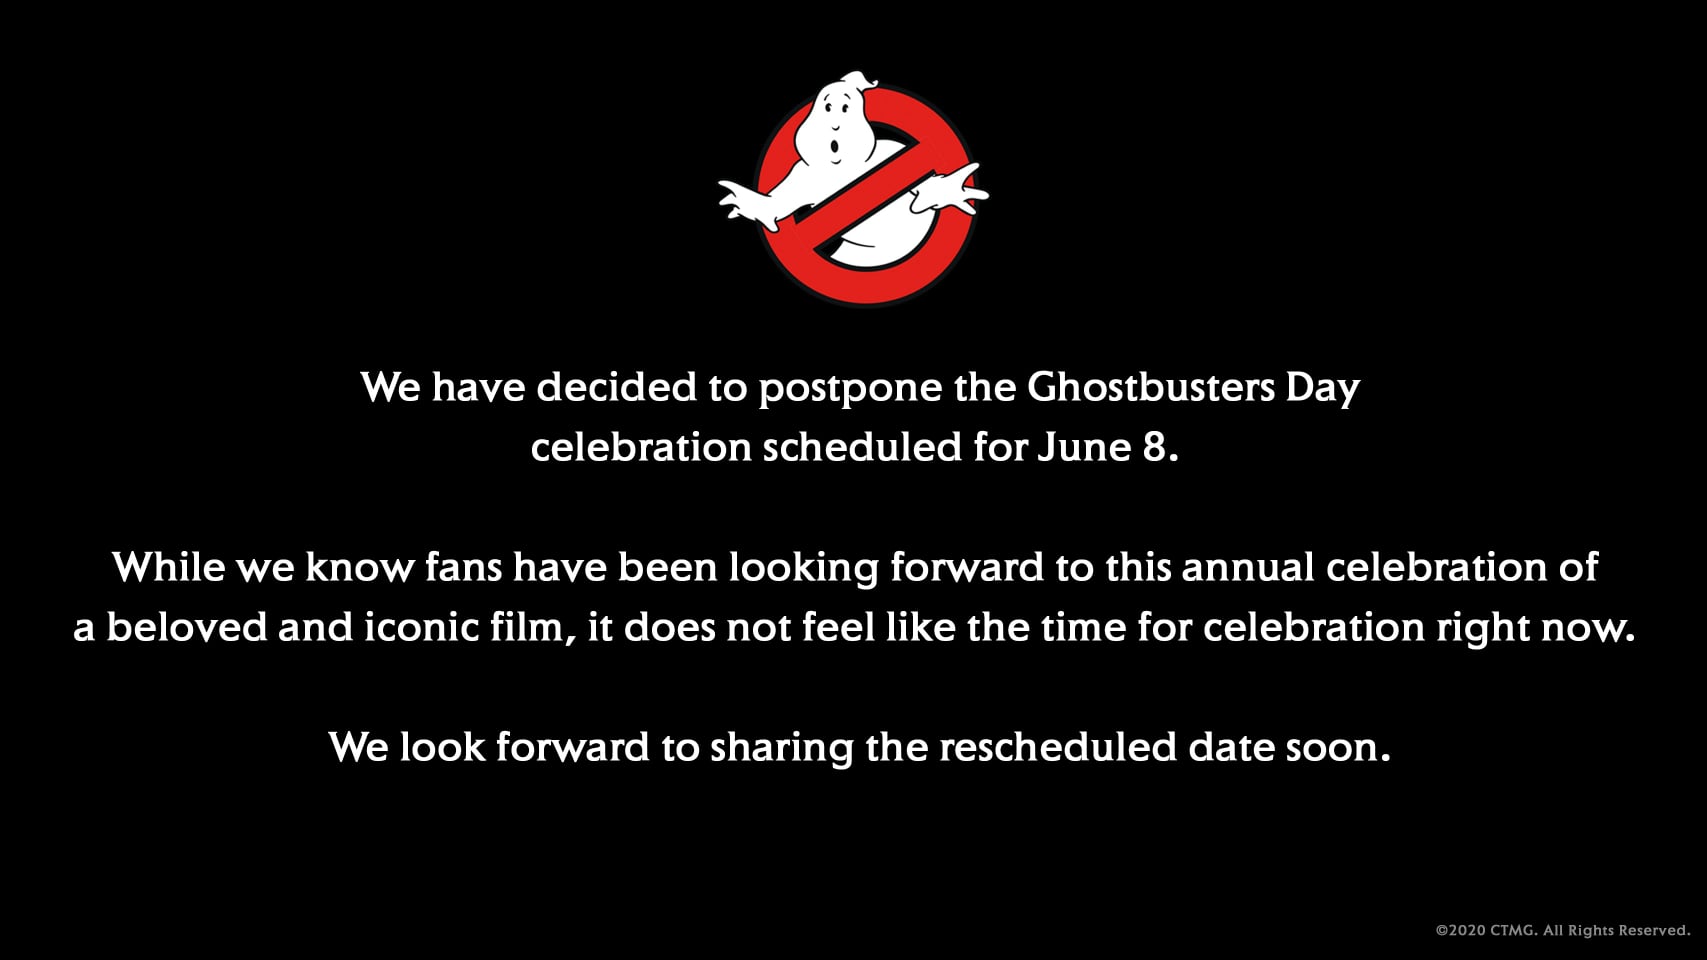 Posticipato il Ghostbusters Day per la situazione negli USA.